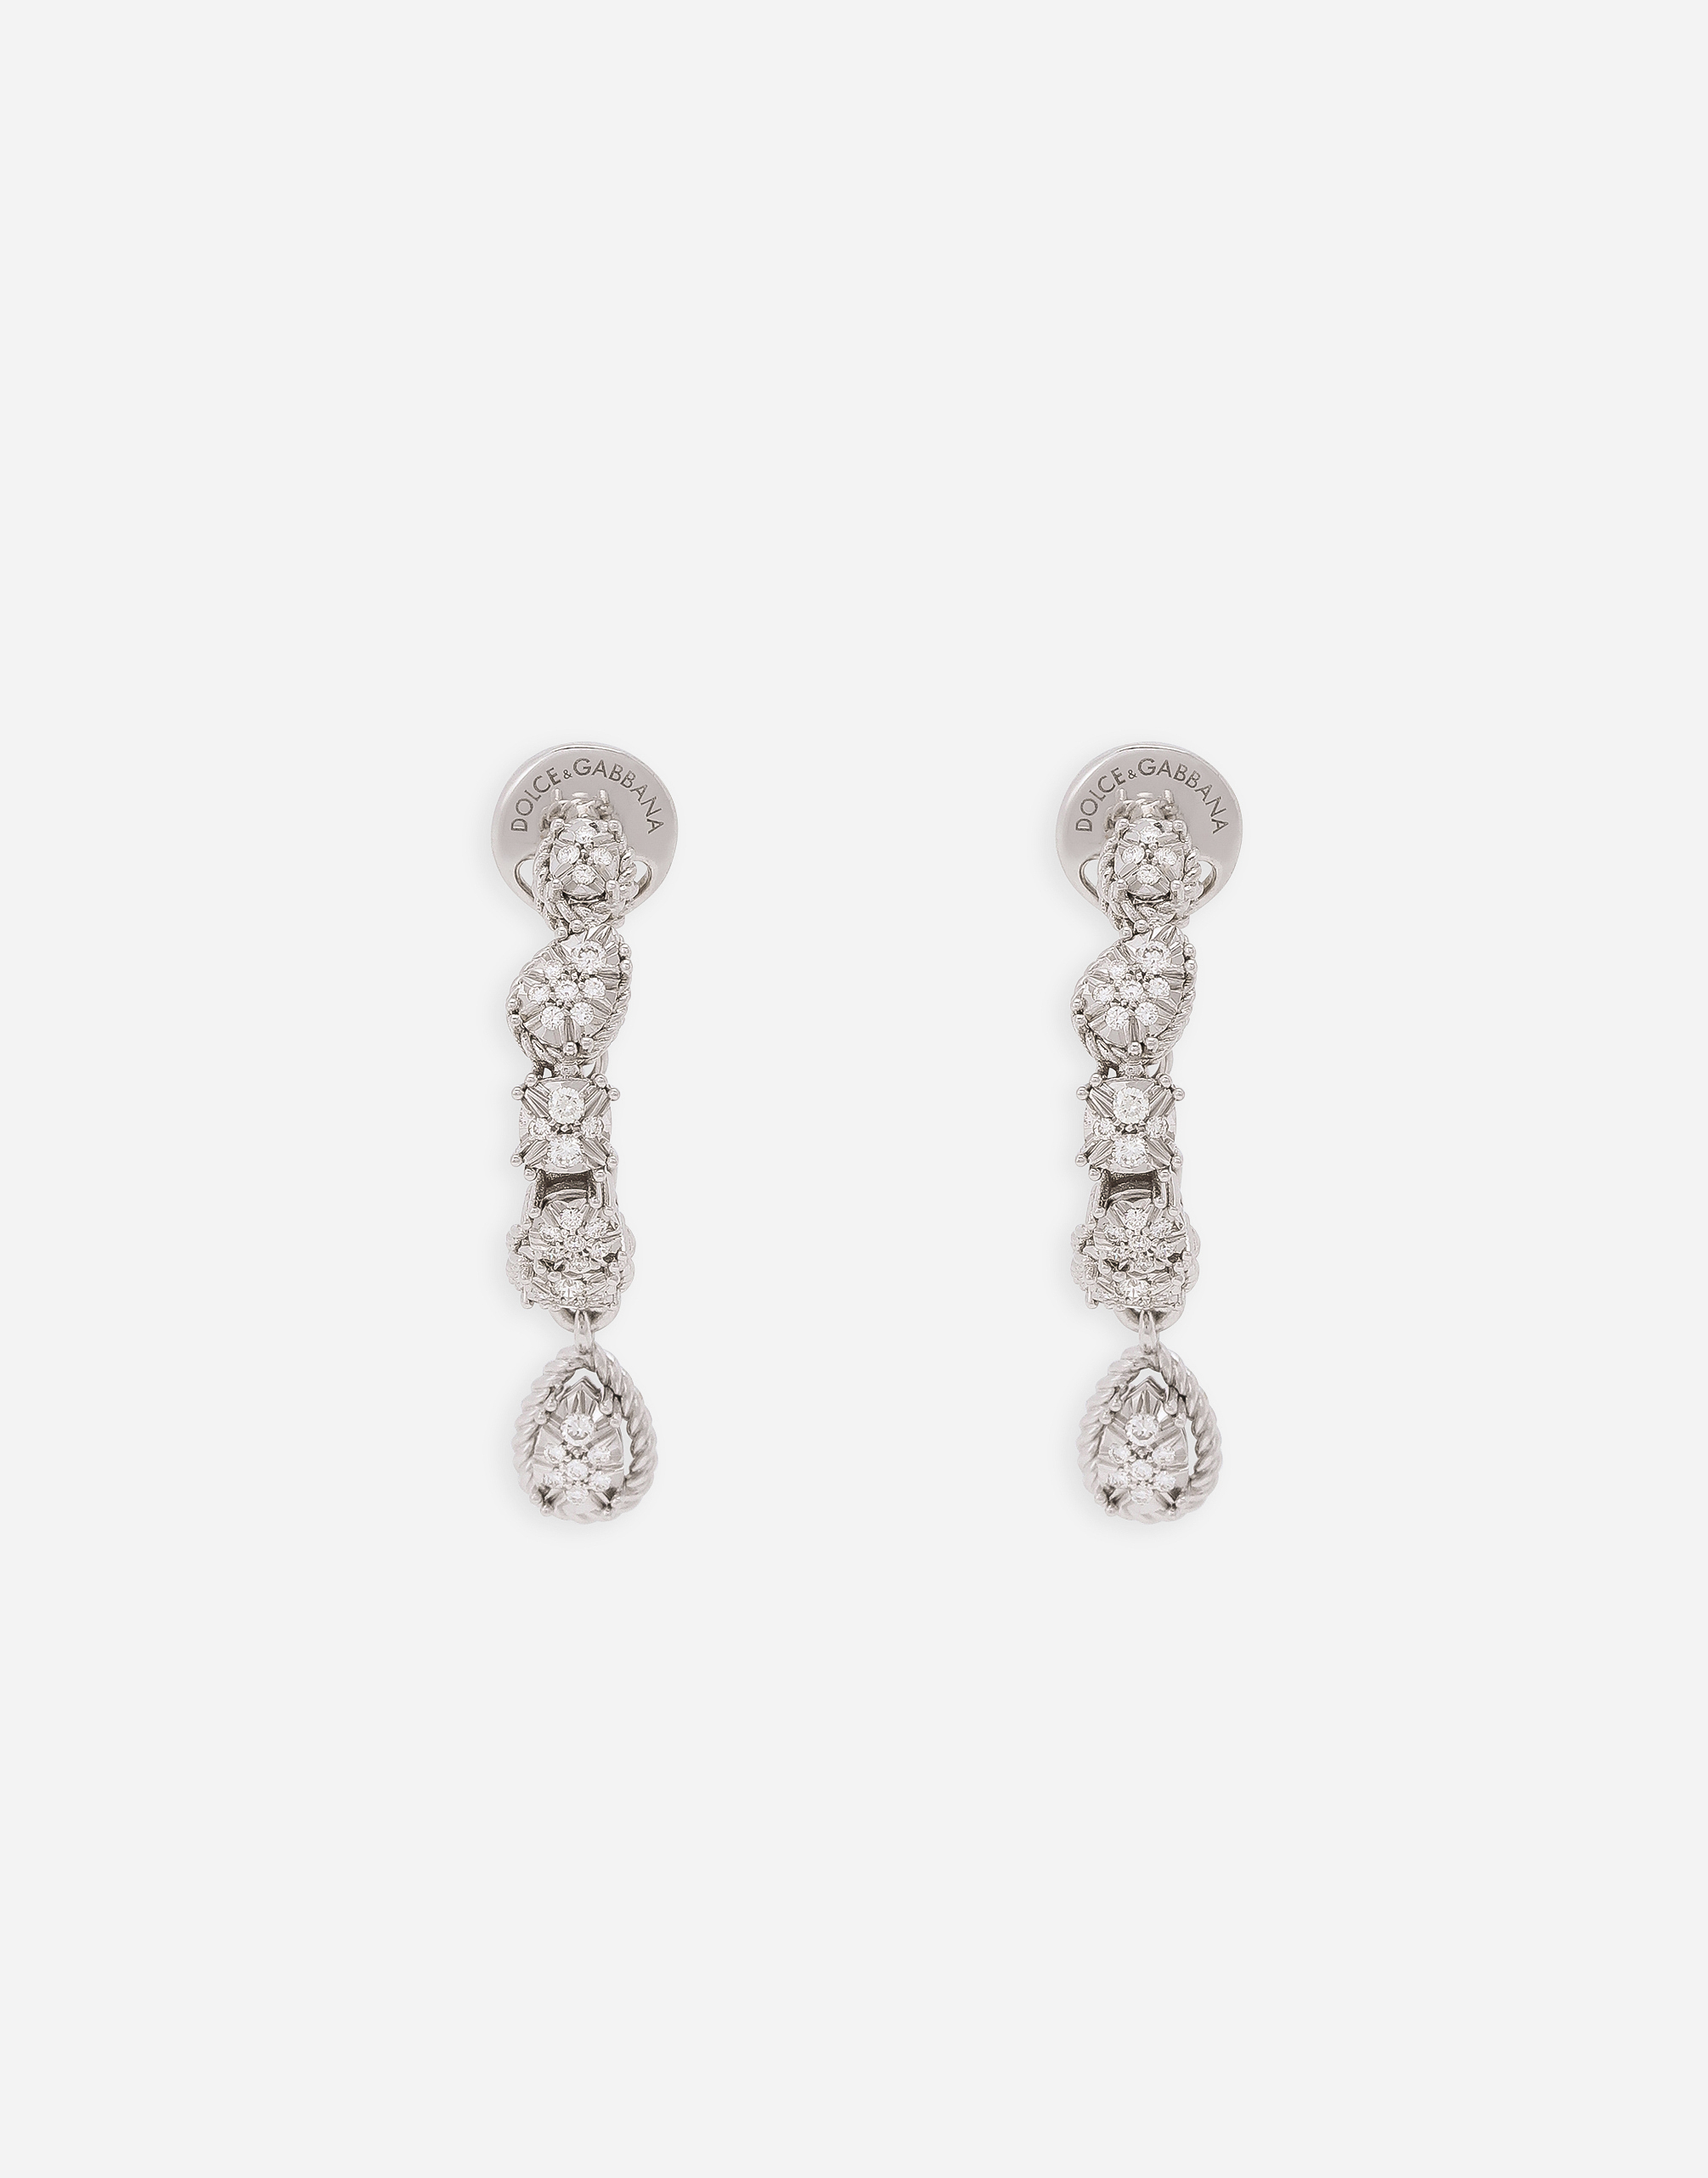 Dolce & Gabbana Easy Diamond Earrings In White Gold 18kt And Diamonds Pavé